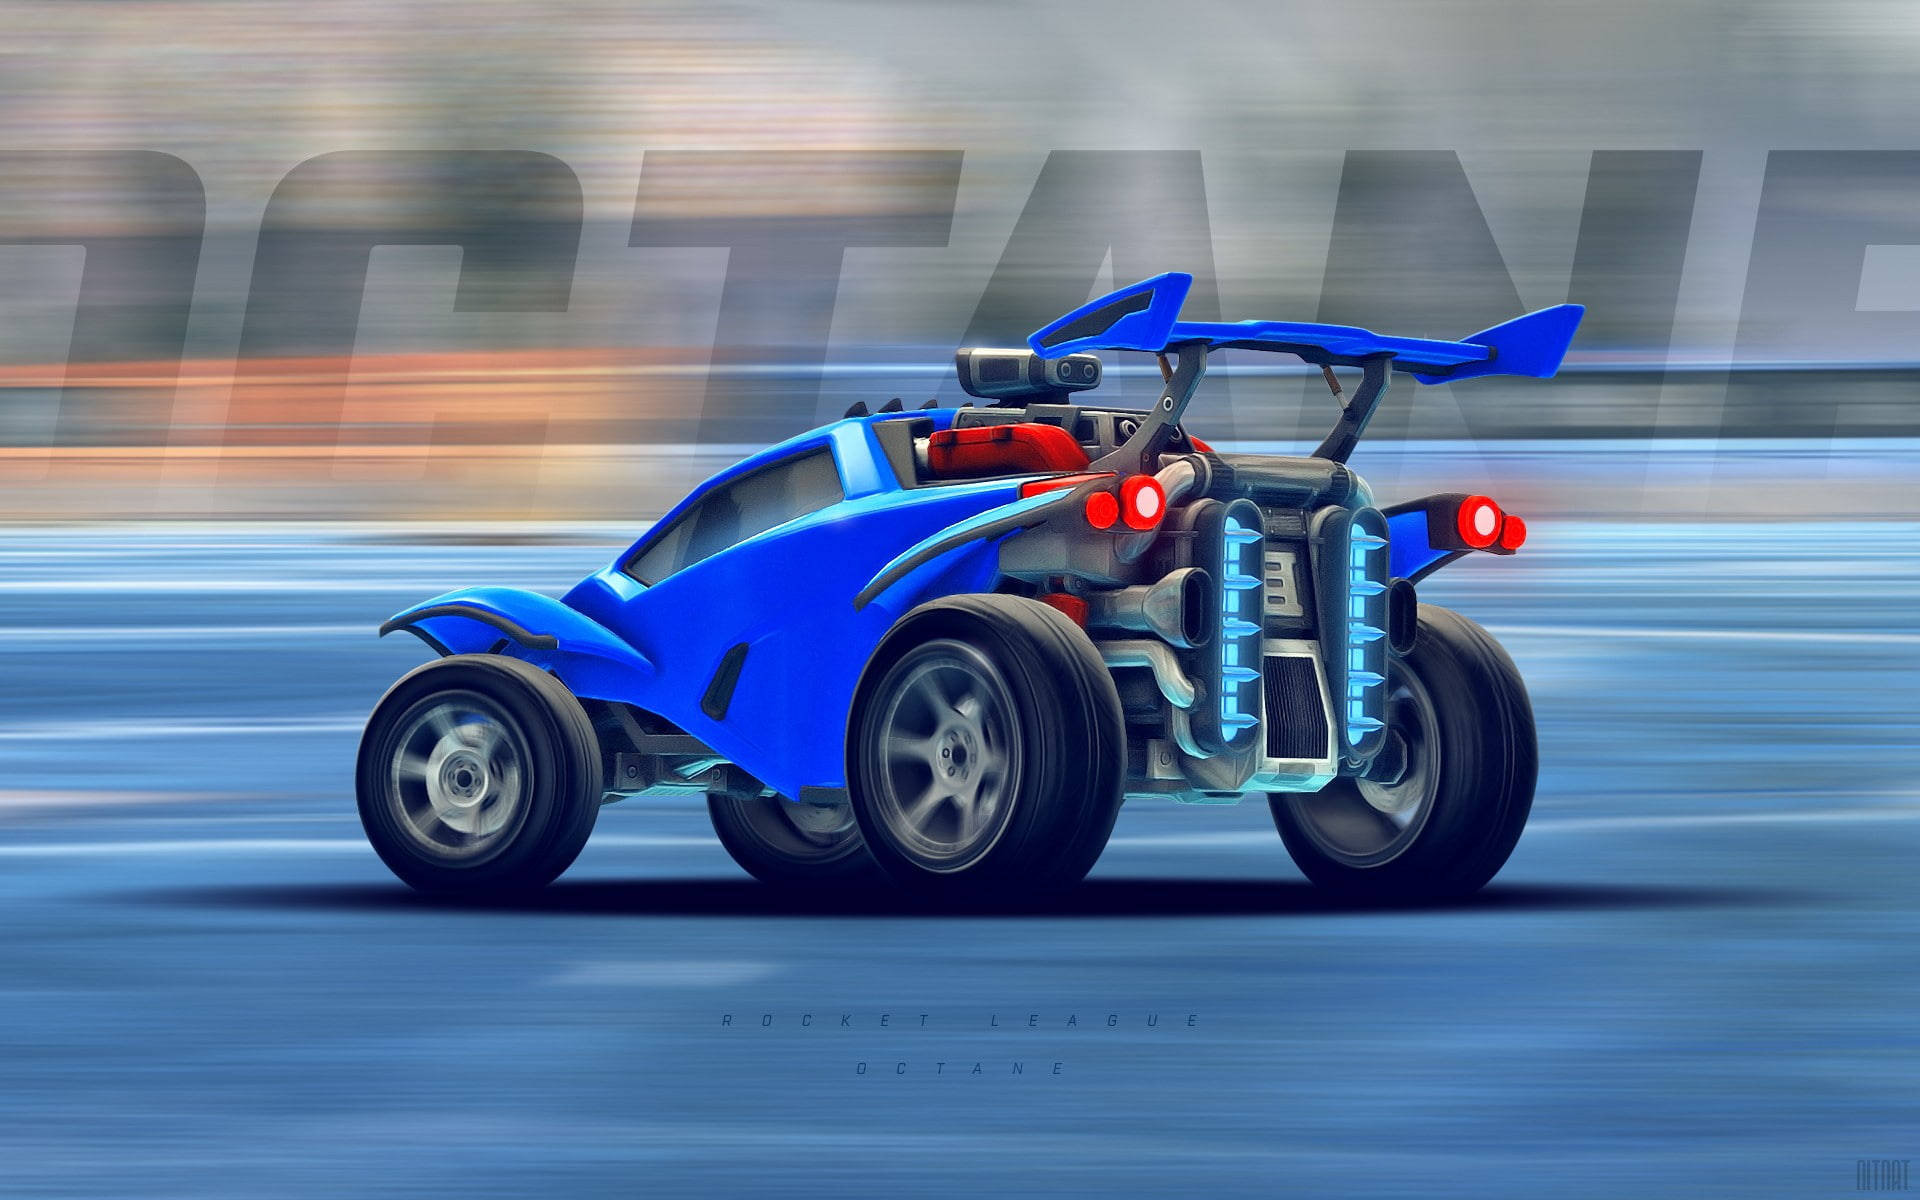 Cool Rocket League Blue Octane Battle Car